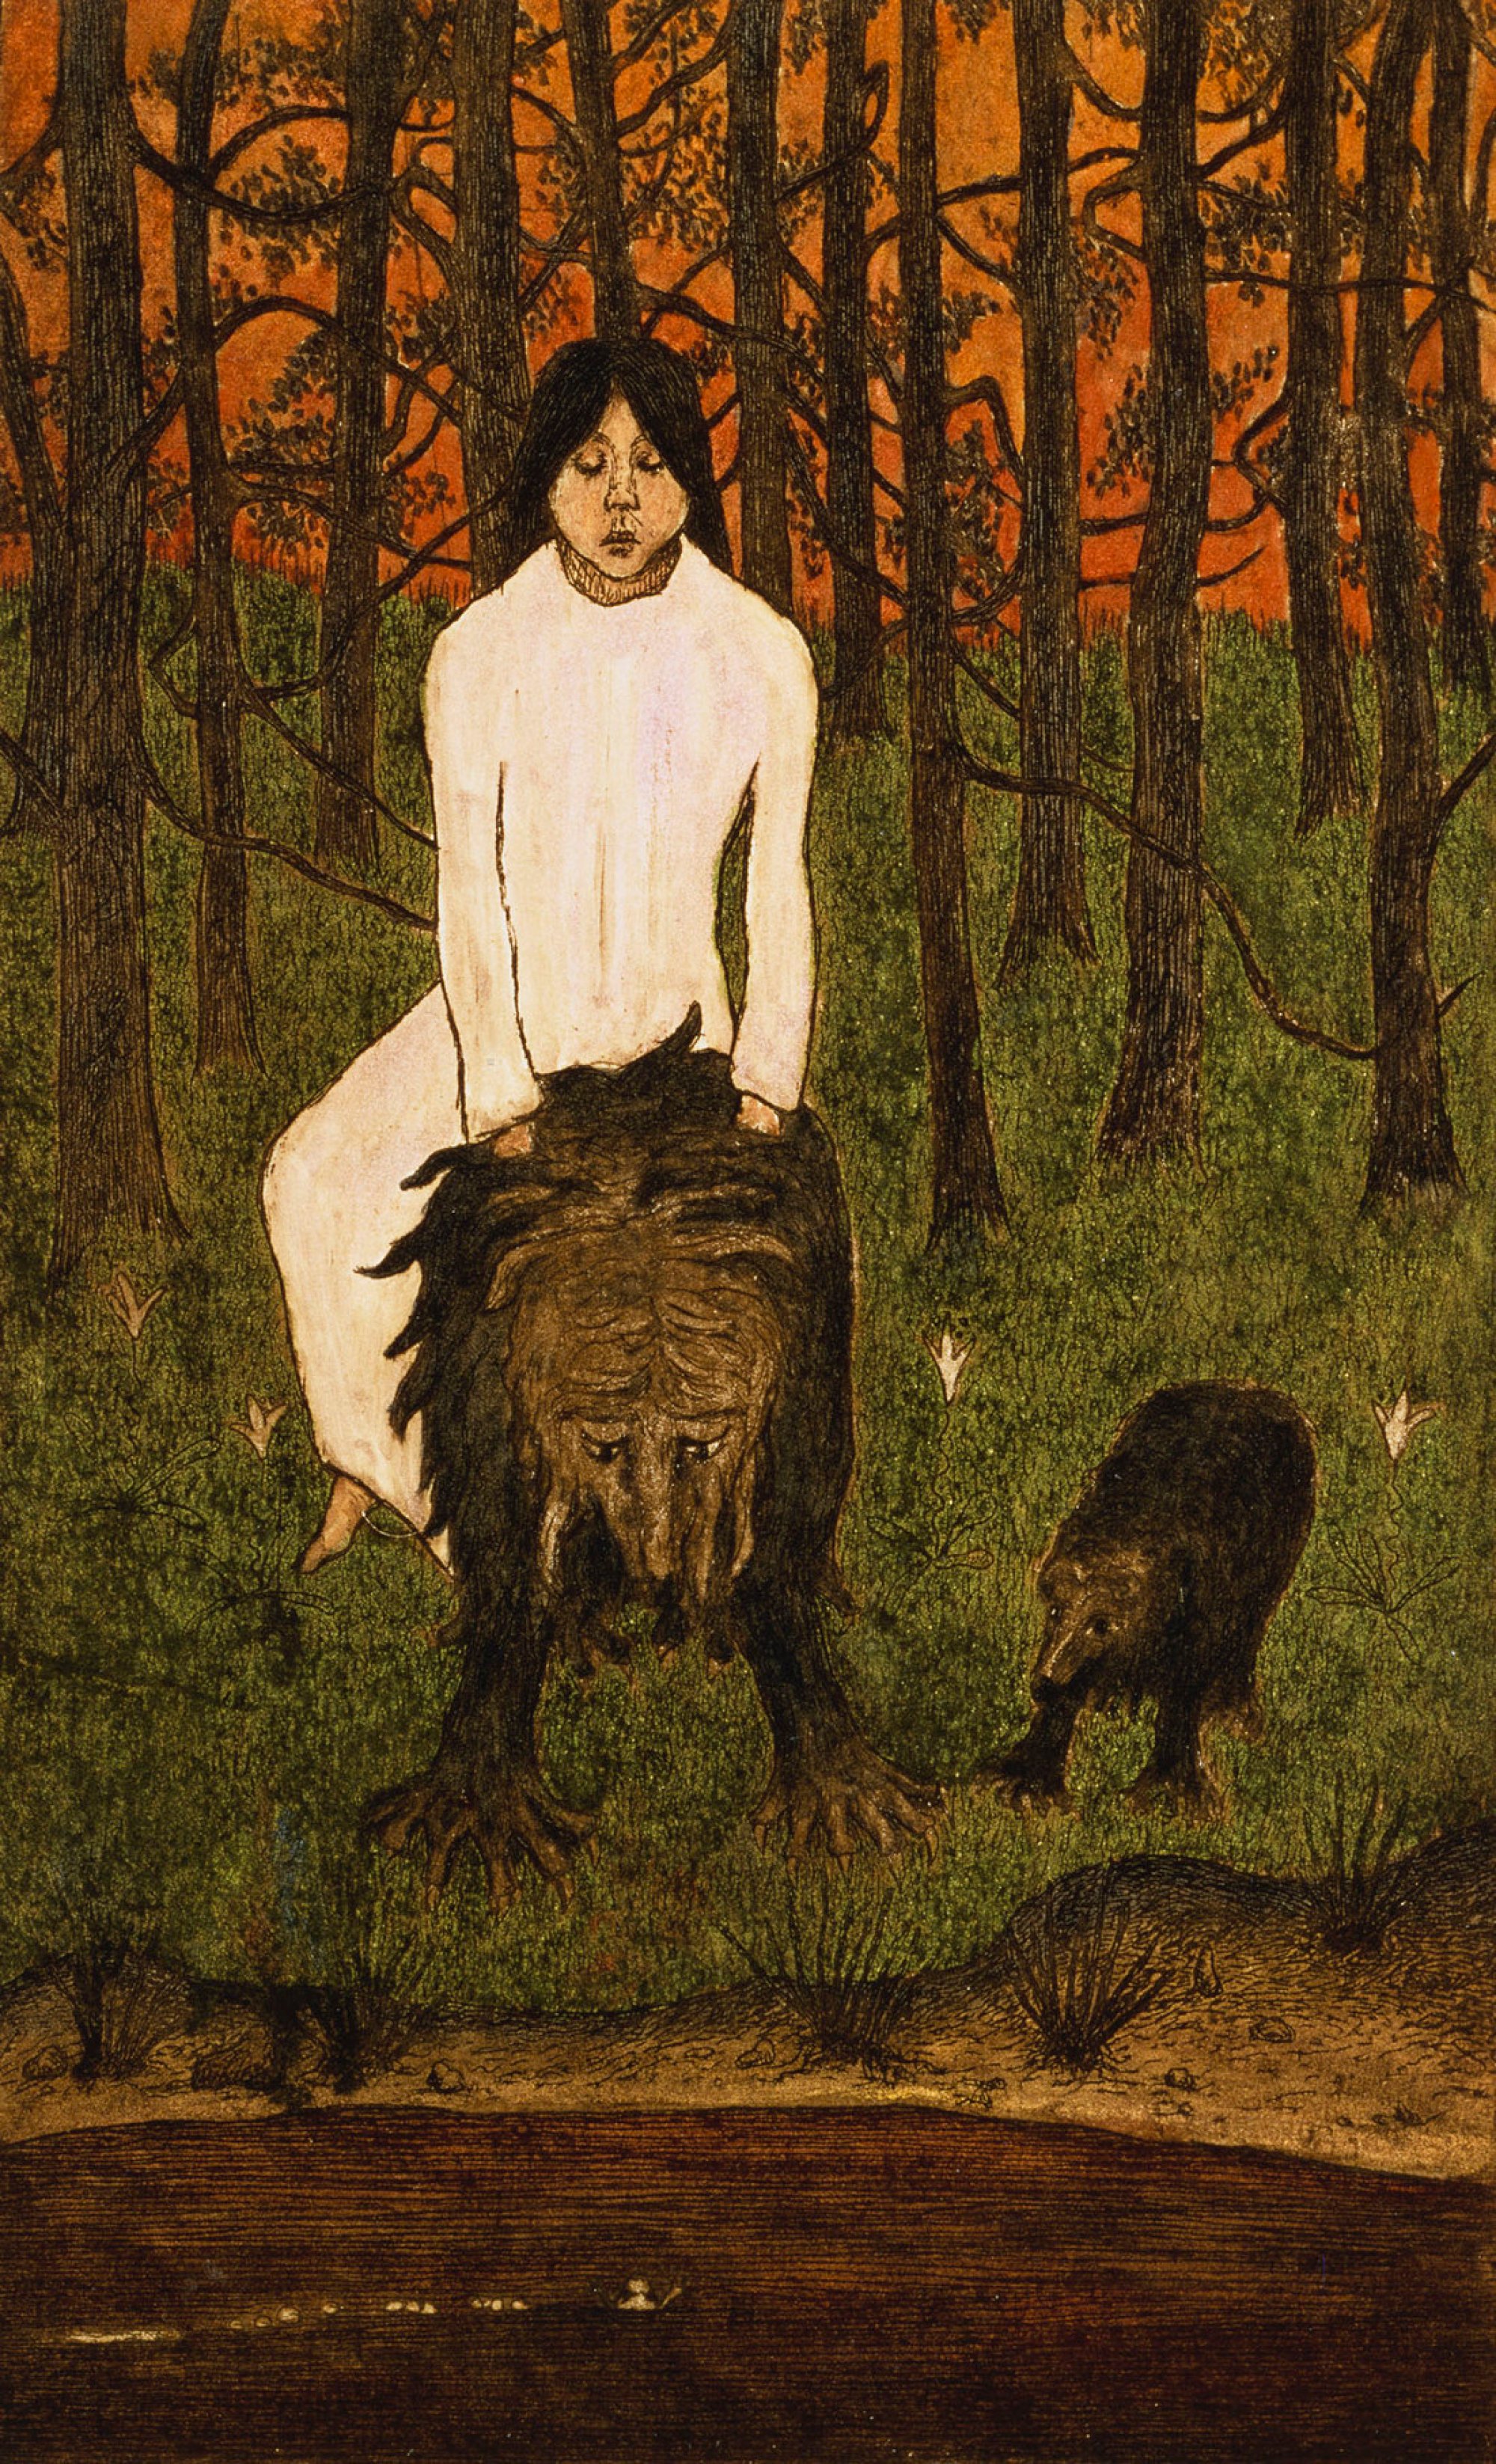 Pohádka by Hugo Simberg - 1898 - 21 x 13 cm 